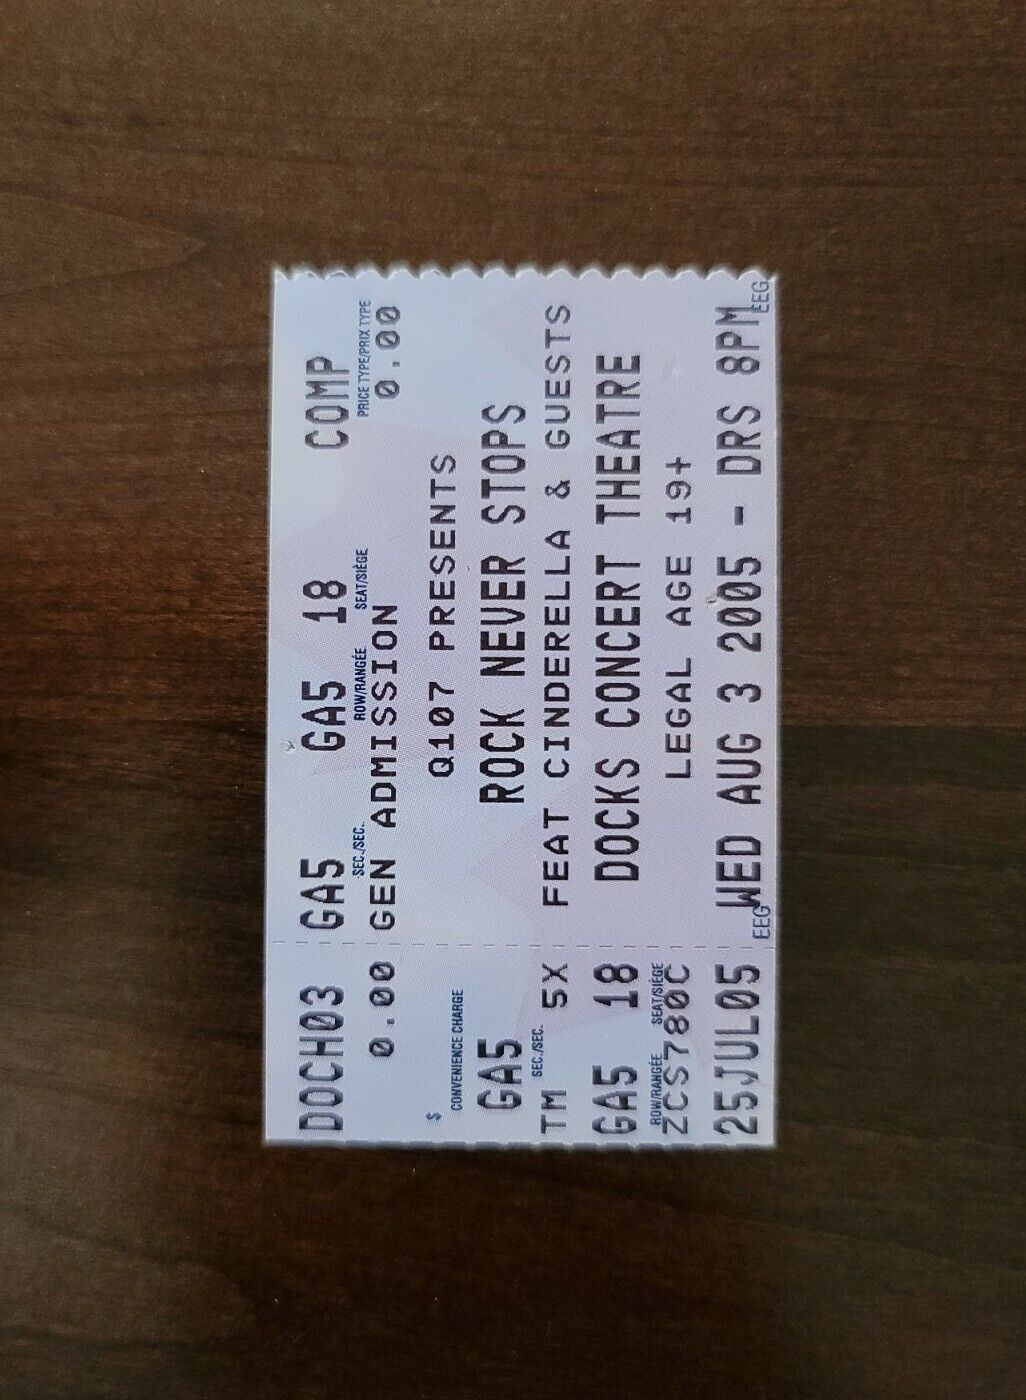 Rock Never Stops 2005, Toronto Docks Theatre Original Concert Ticket Stub